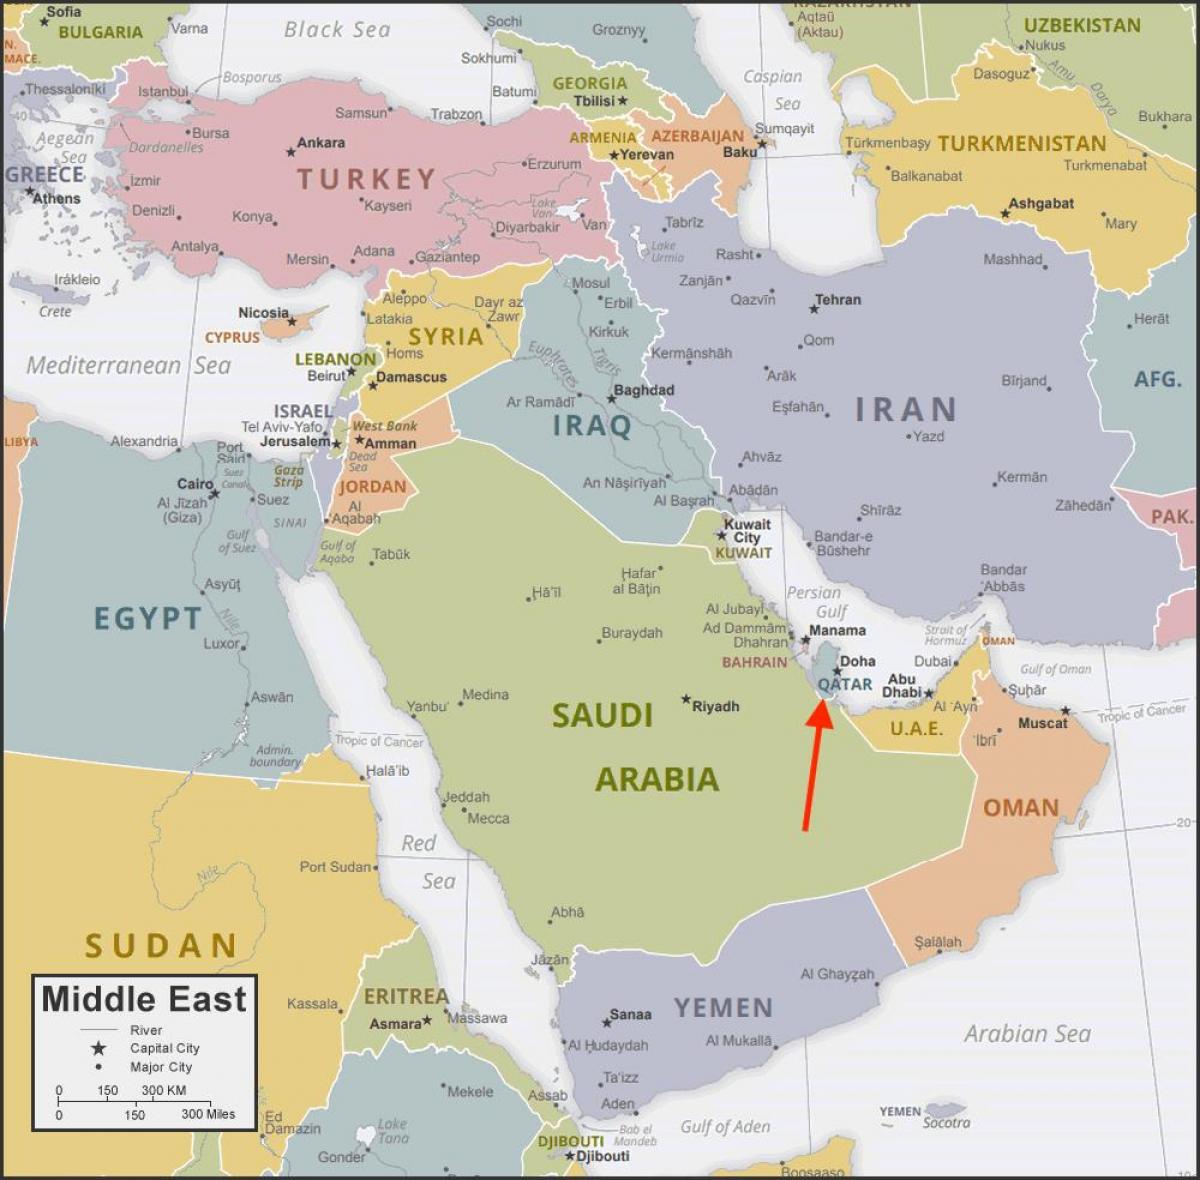 Katar Position auf der Westasien-Karte